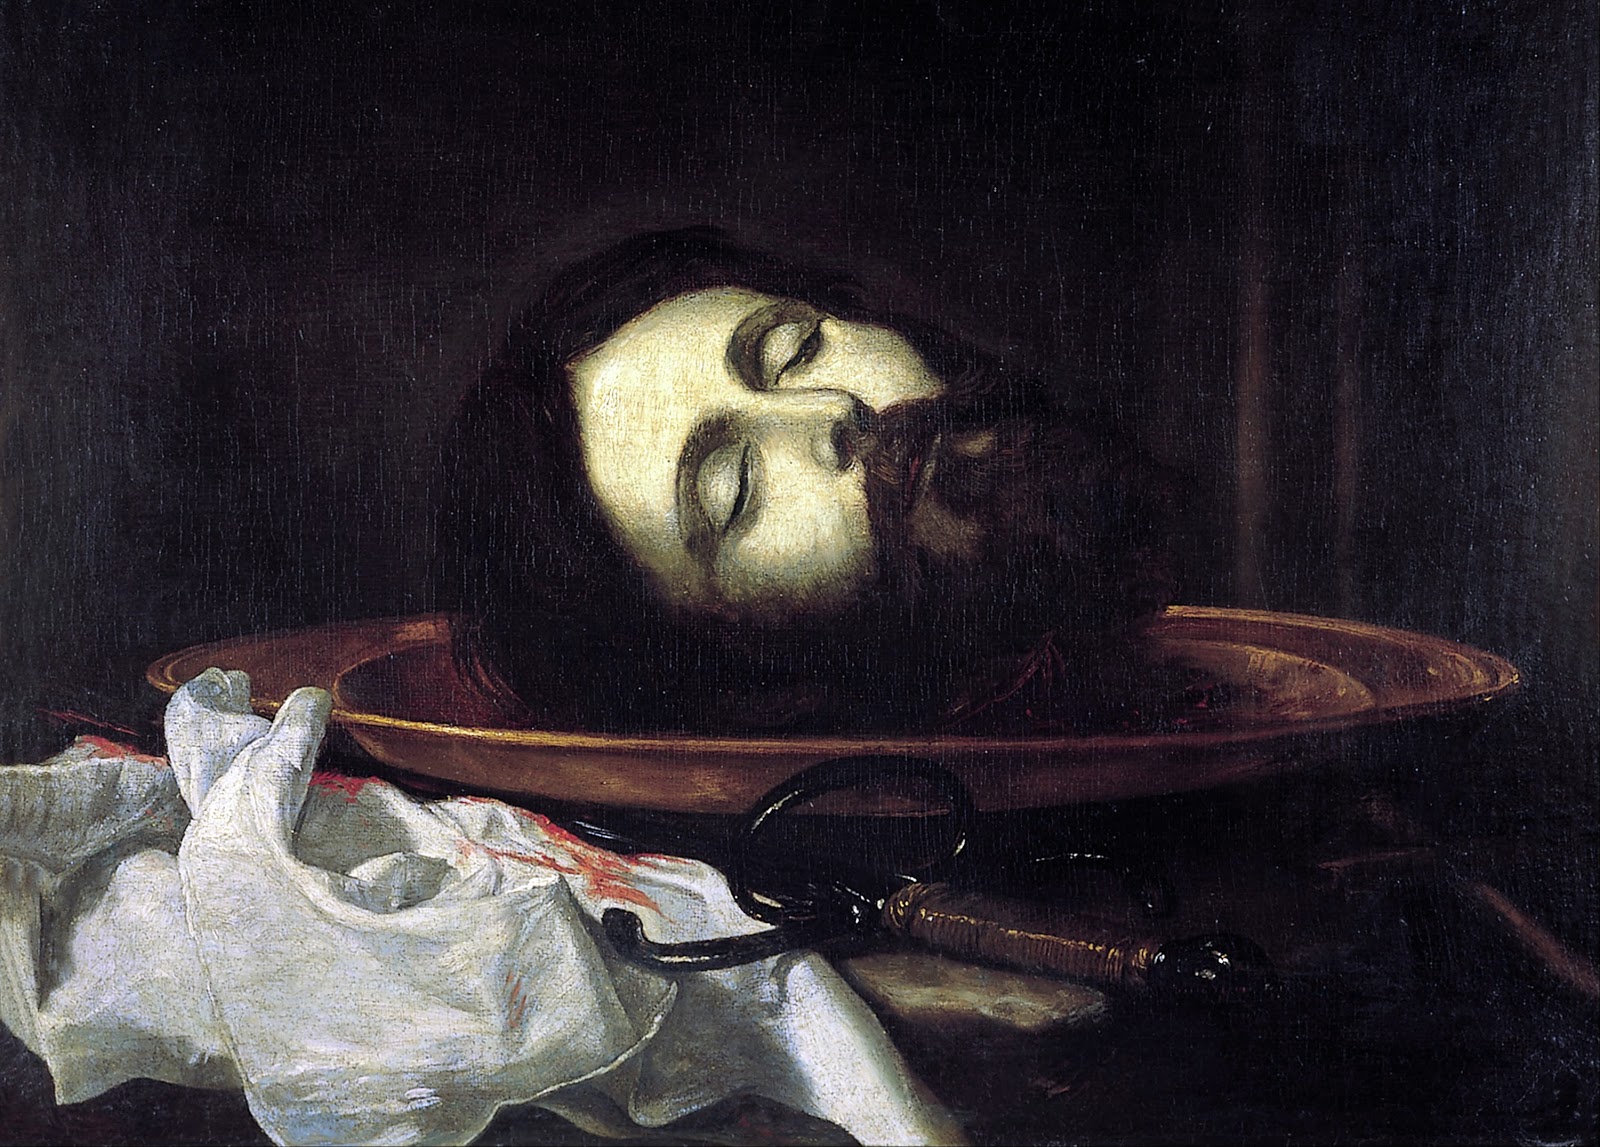 Jusepe+de+Ribera-1591-1652 (22).jpg